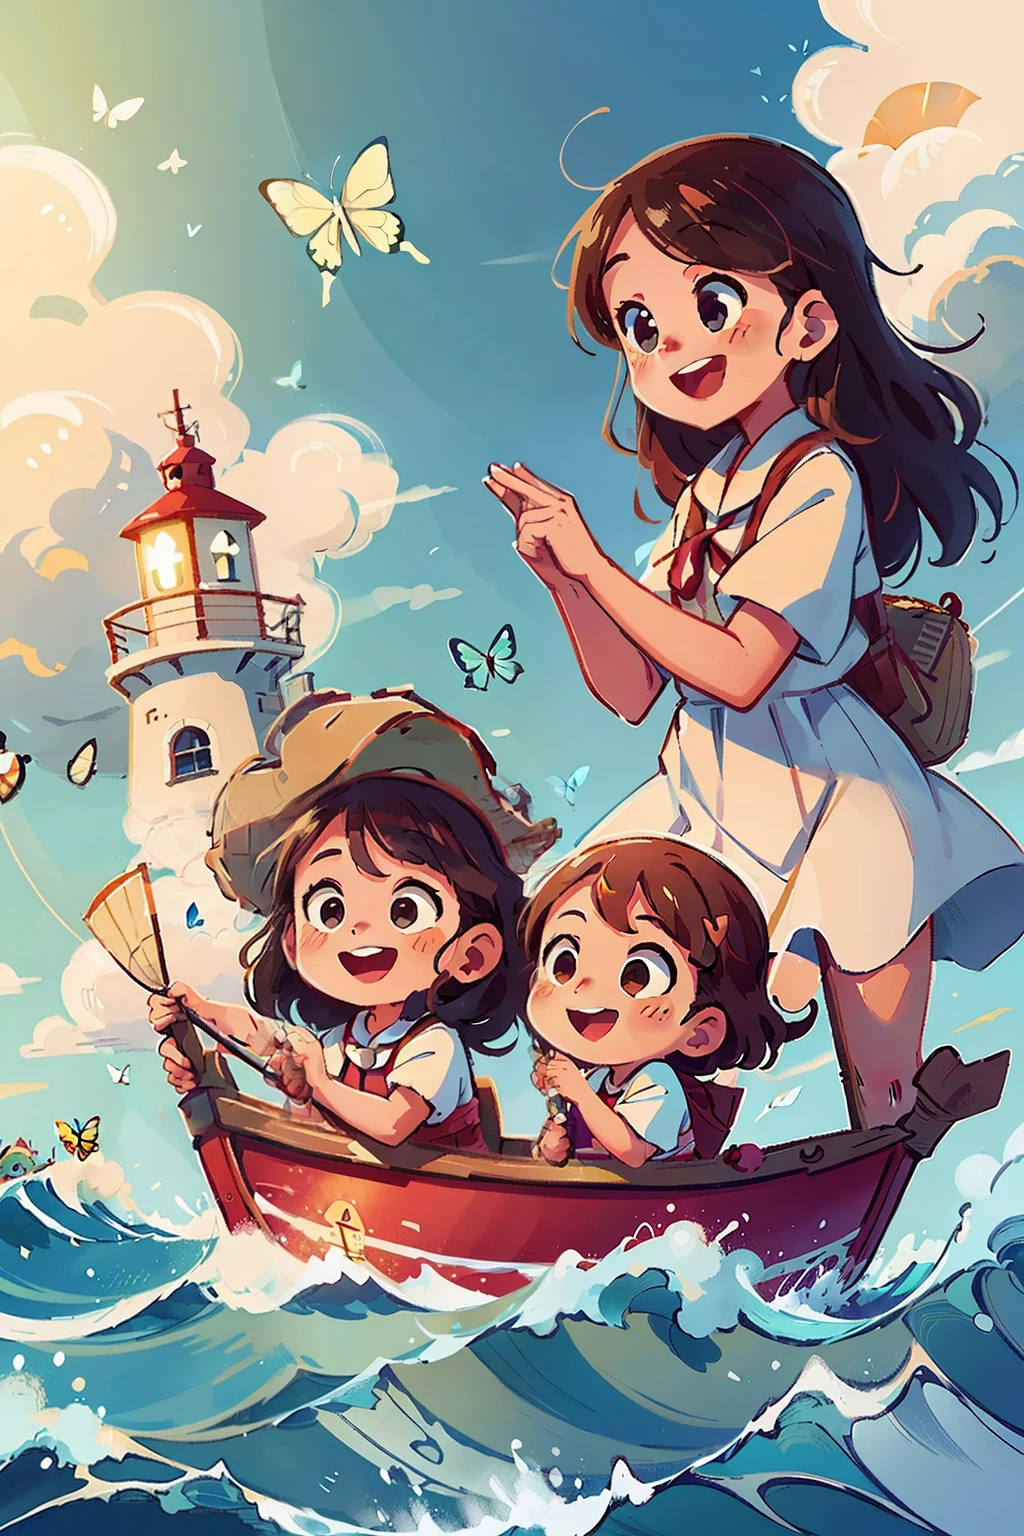 ボートに乗っている幸せそうな2人の幼い女の子の画像を生成します, 波, 海, 白い雲が浮かぶ空. カラフルな蝶, 背景に灯台がある,